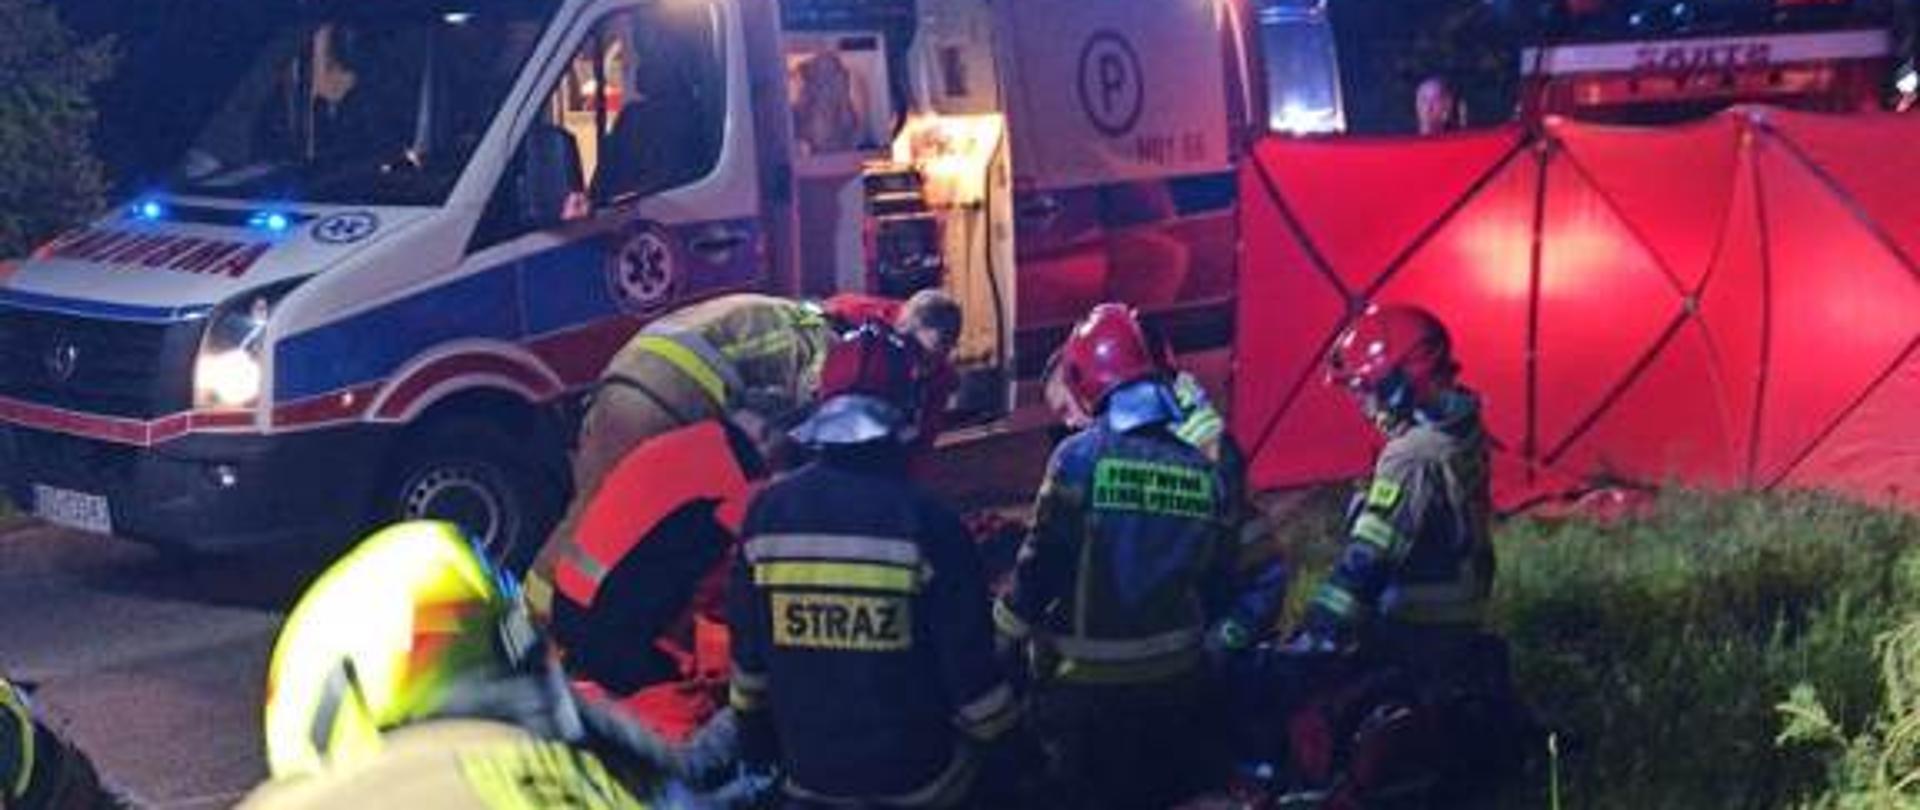 Strażacy oraz ratownicy medyczni udzielający pomocy medycznej poszkodowanym w wypadku samochodowym.